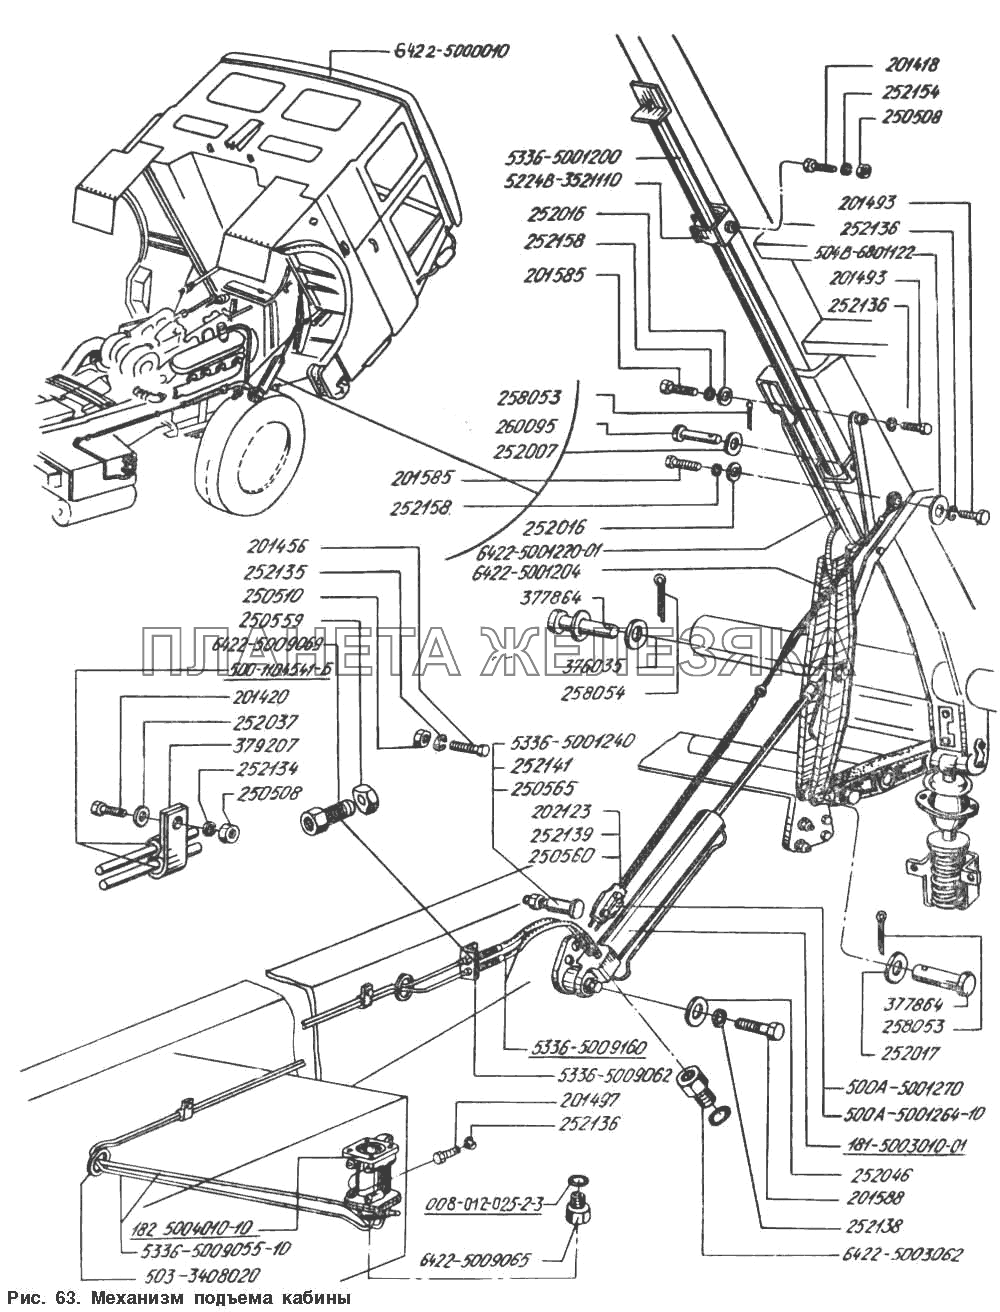 Механизм подъема кабины МАЗ-54328